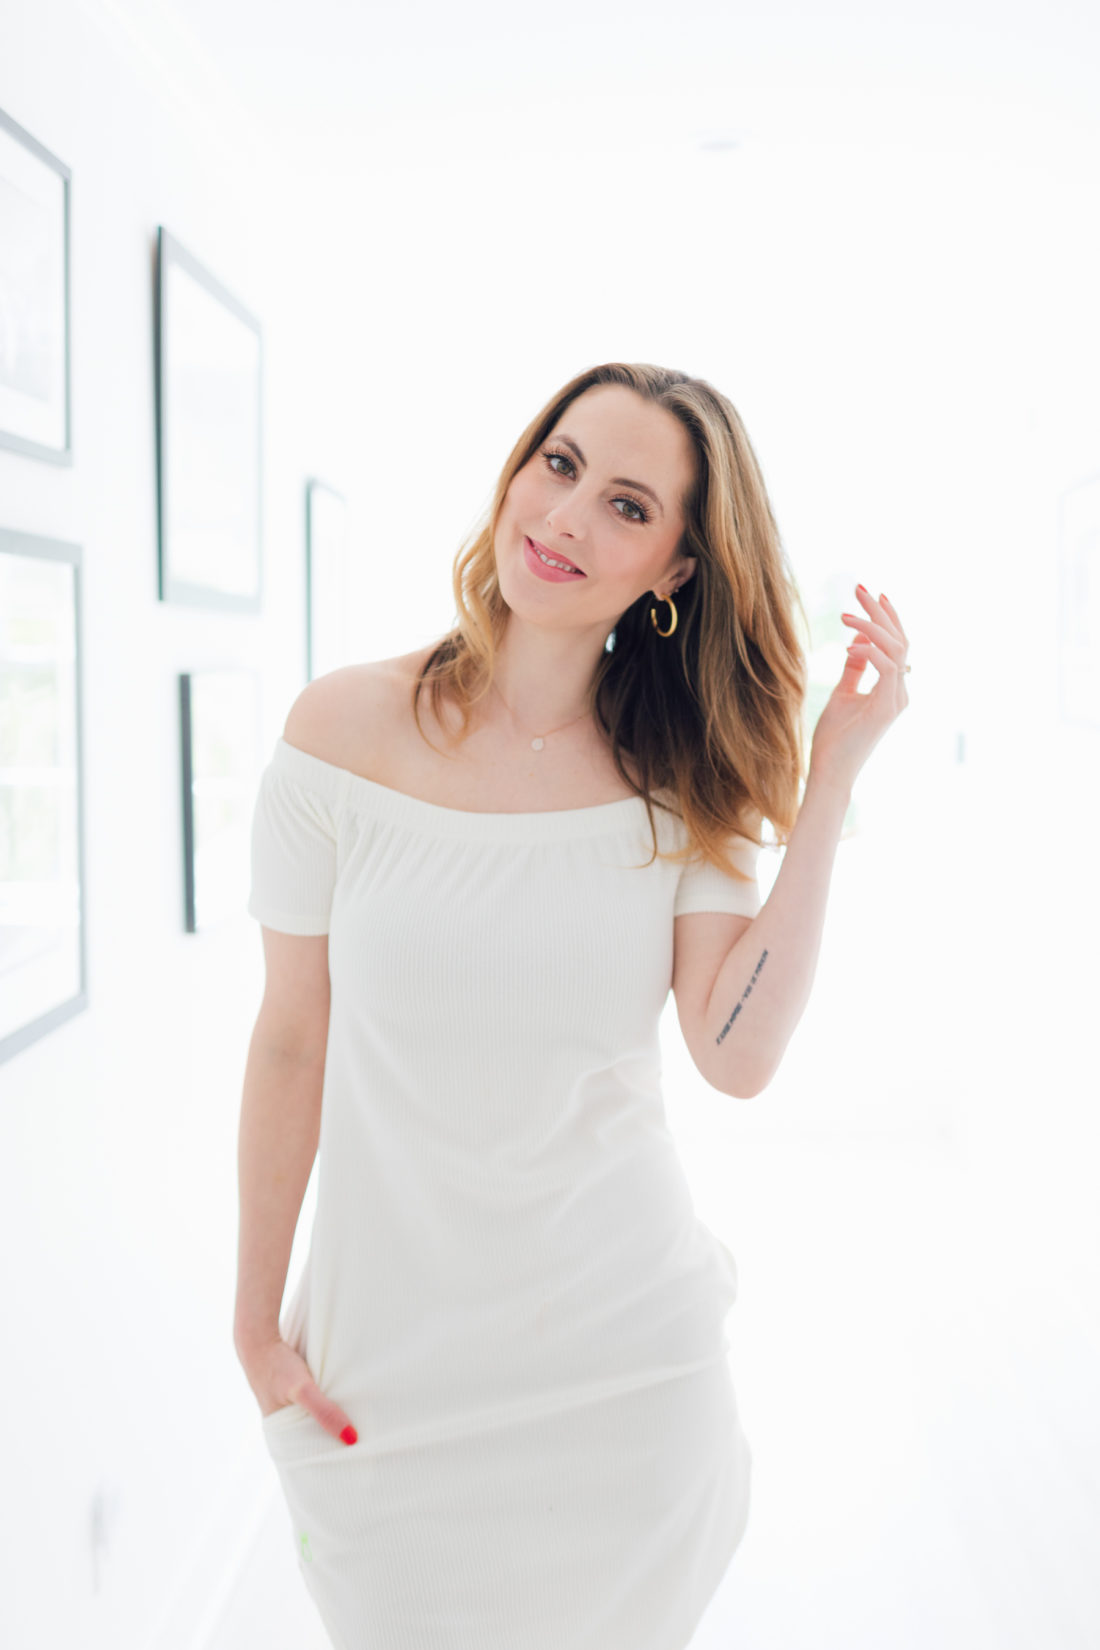 Eva Amurri Martino wears a little white dress for spring